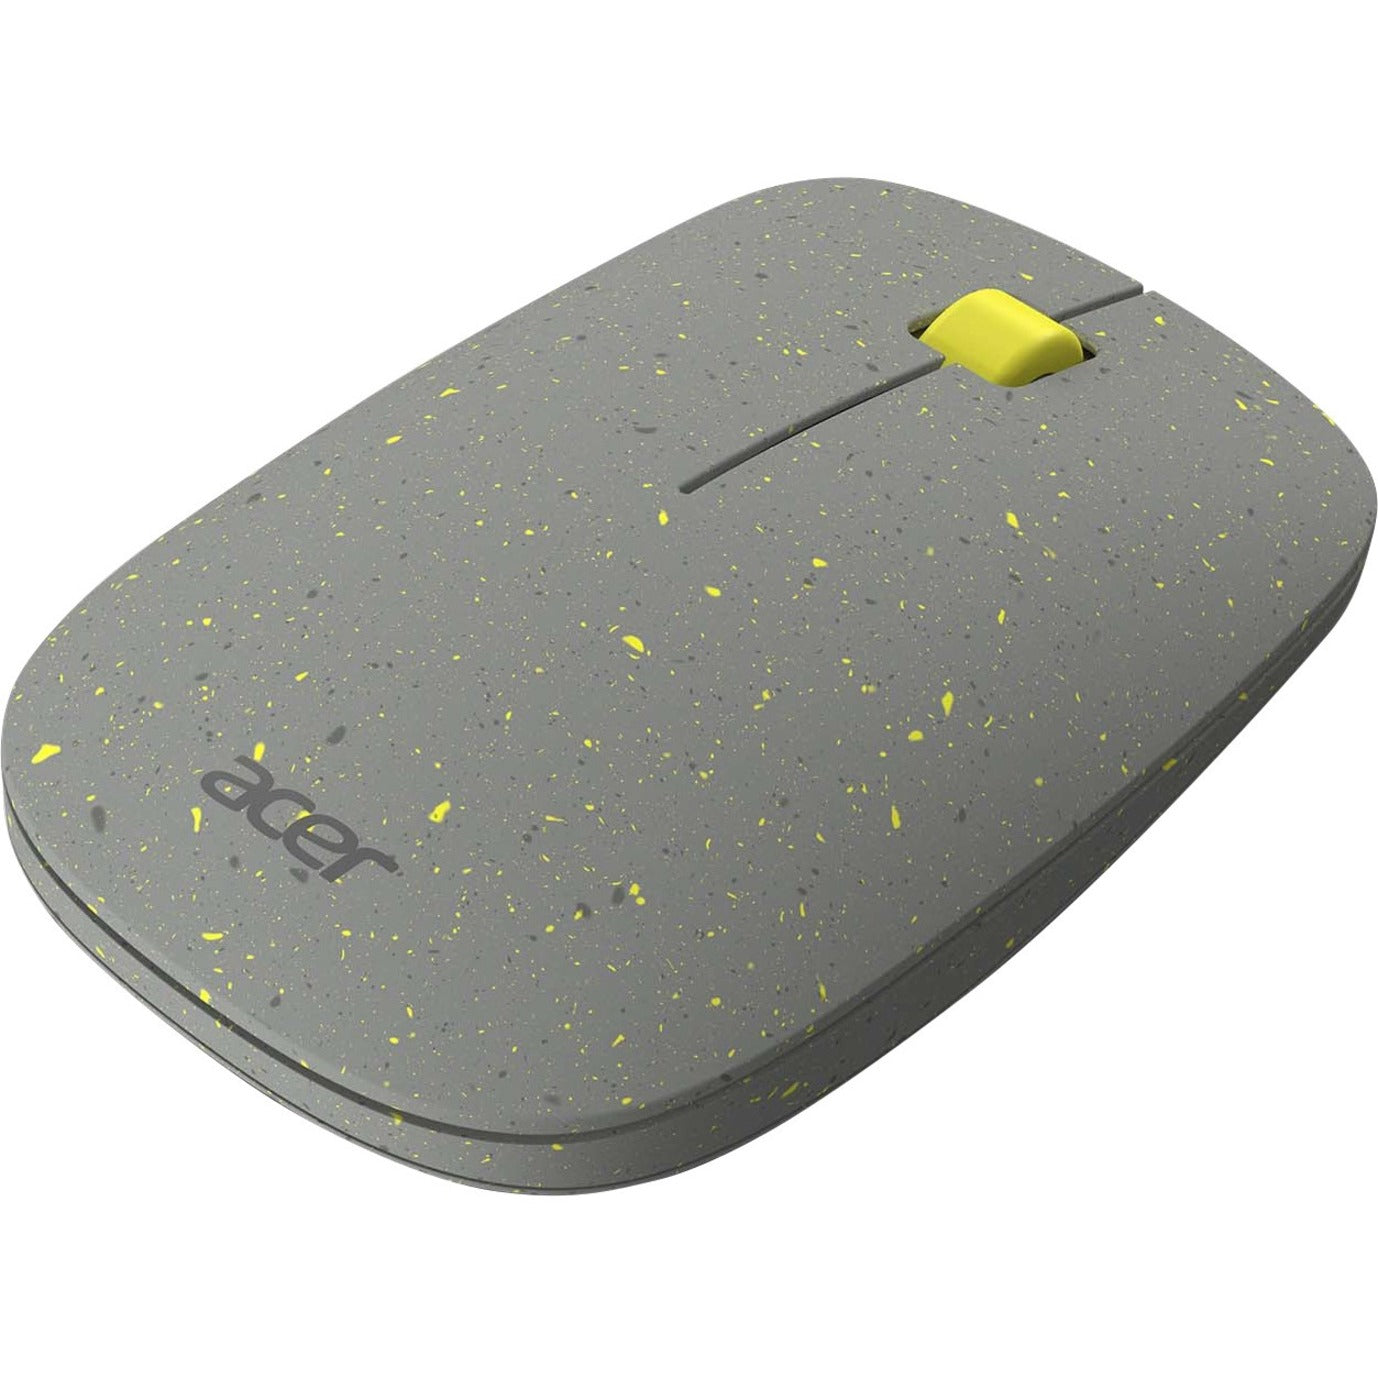 Acer GP.MCE11.022 Macaron Vero Mouse, Wireless, 1200 dpi, Gray